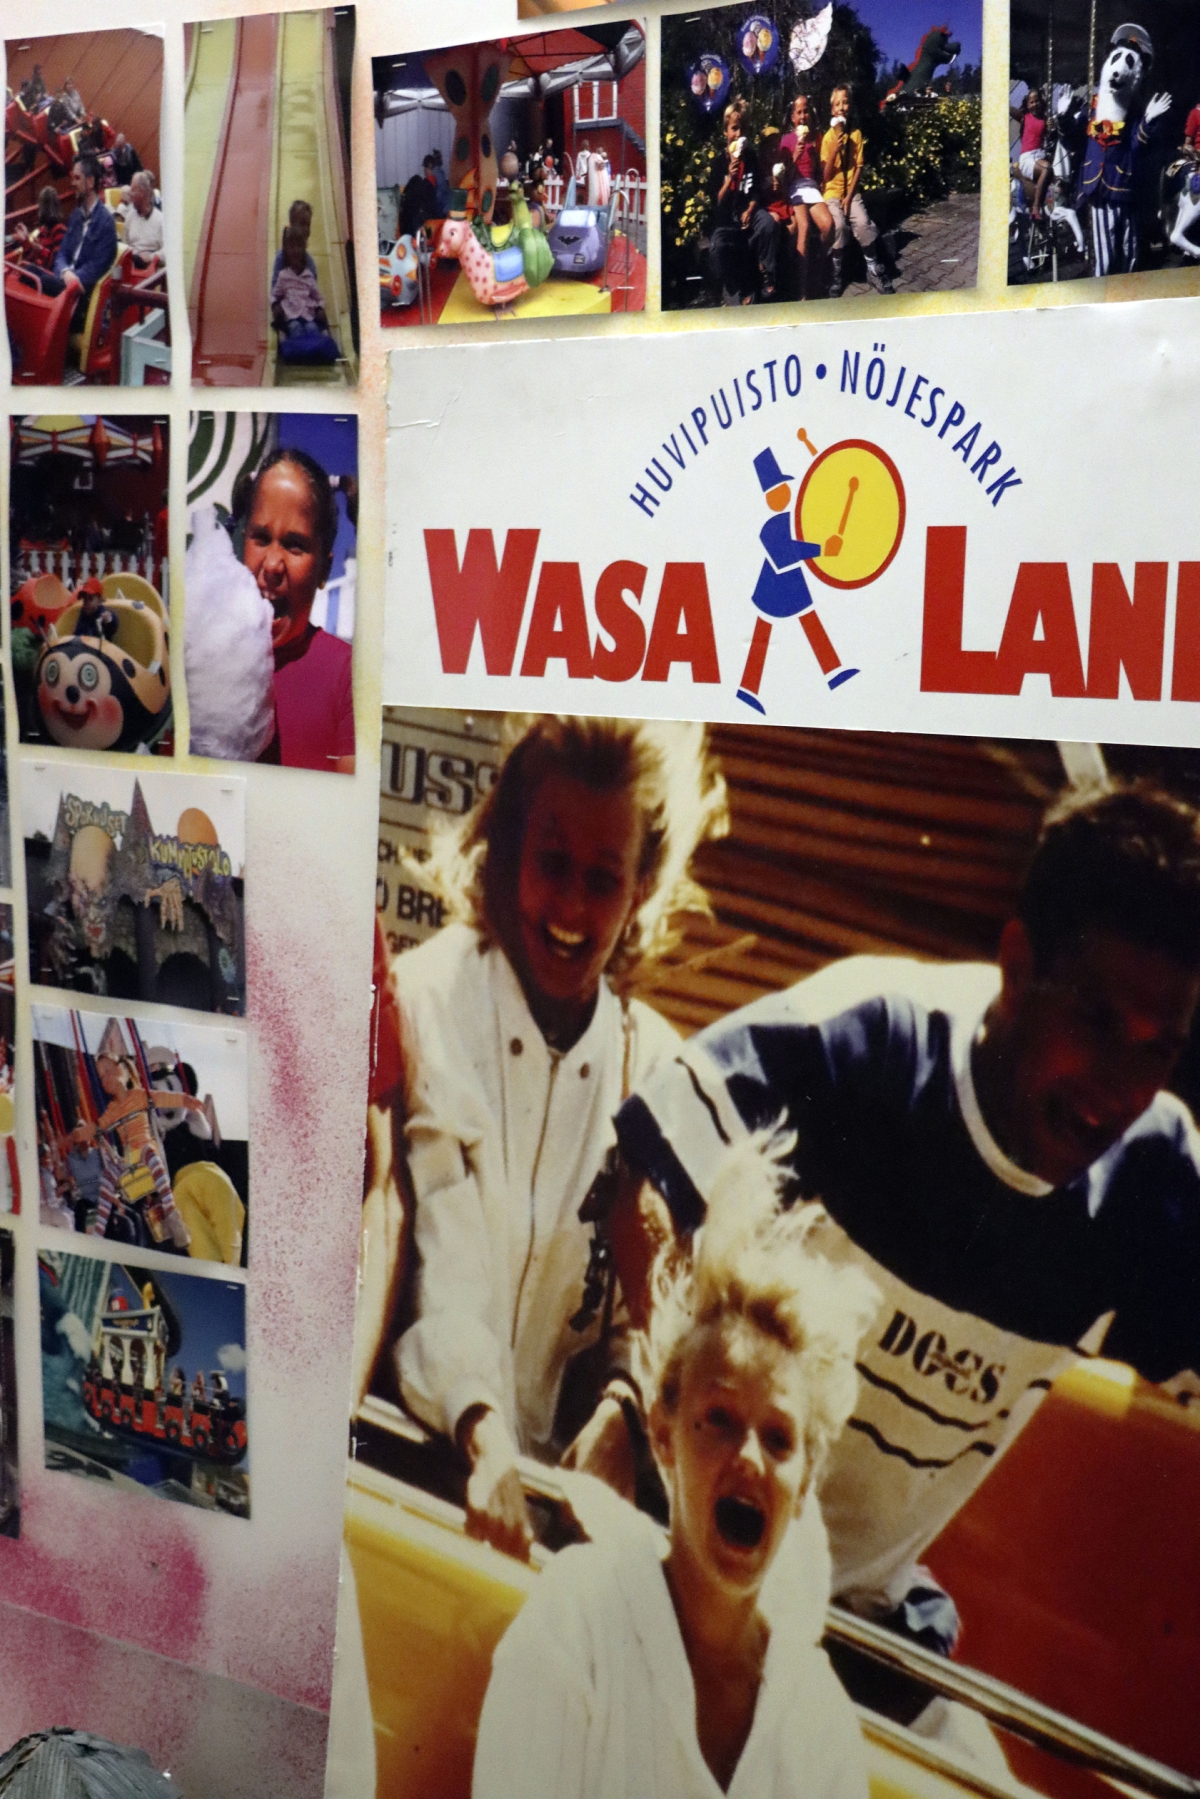 Näyttelyihin on koottu vanhoja kuvia ja esineitä Wasalandiasta ja Tropiclandiasta. Nähtävillä on myös vanhoja paikallisia sanomalehtiä, joista löytyy muun muassa vuoden 1973 Vaasa-lehti.